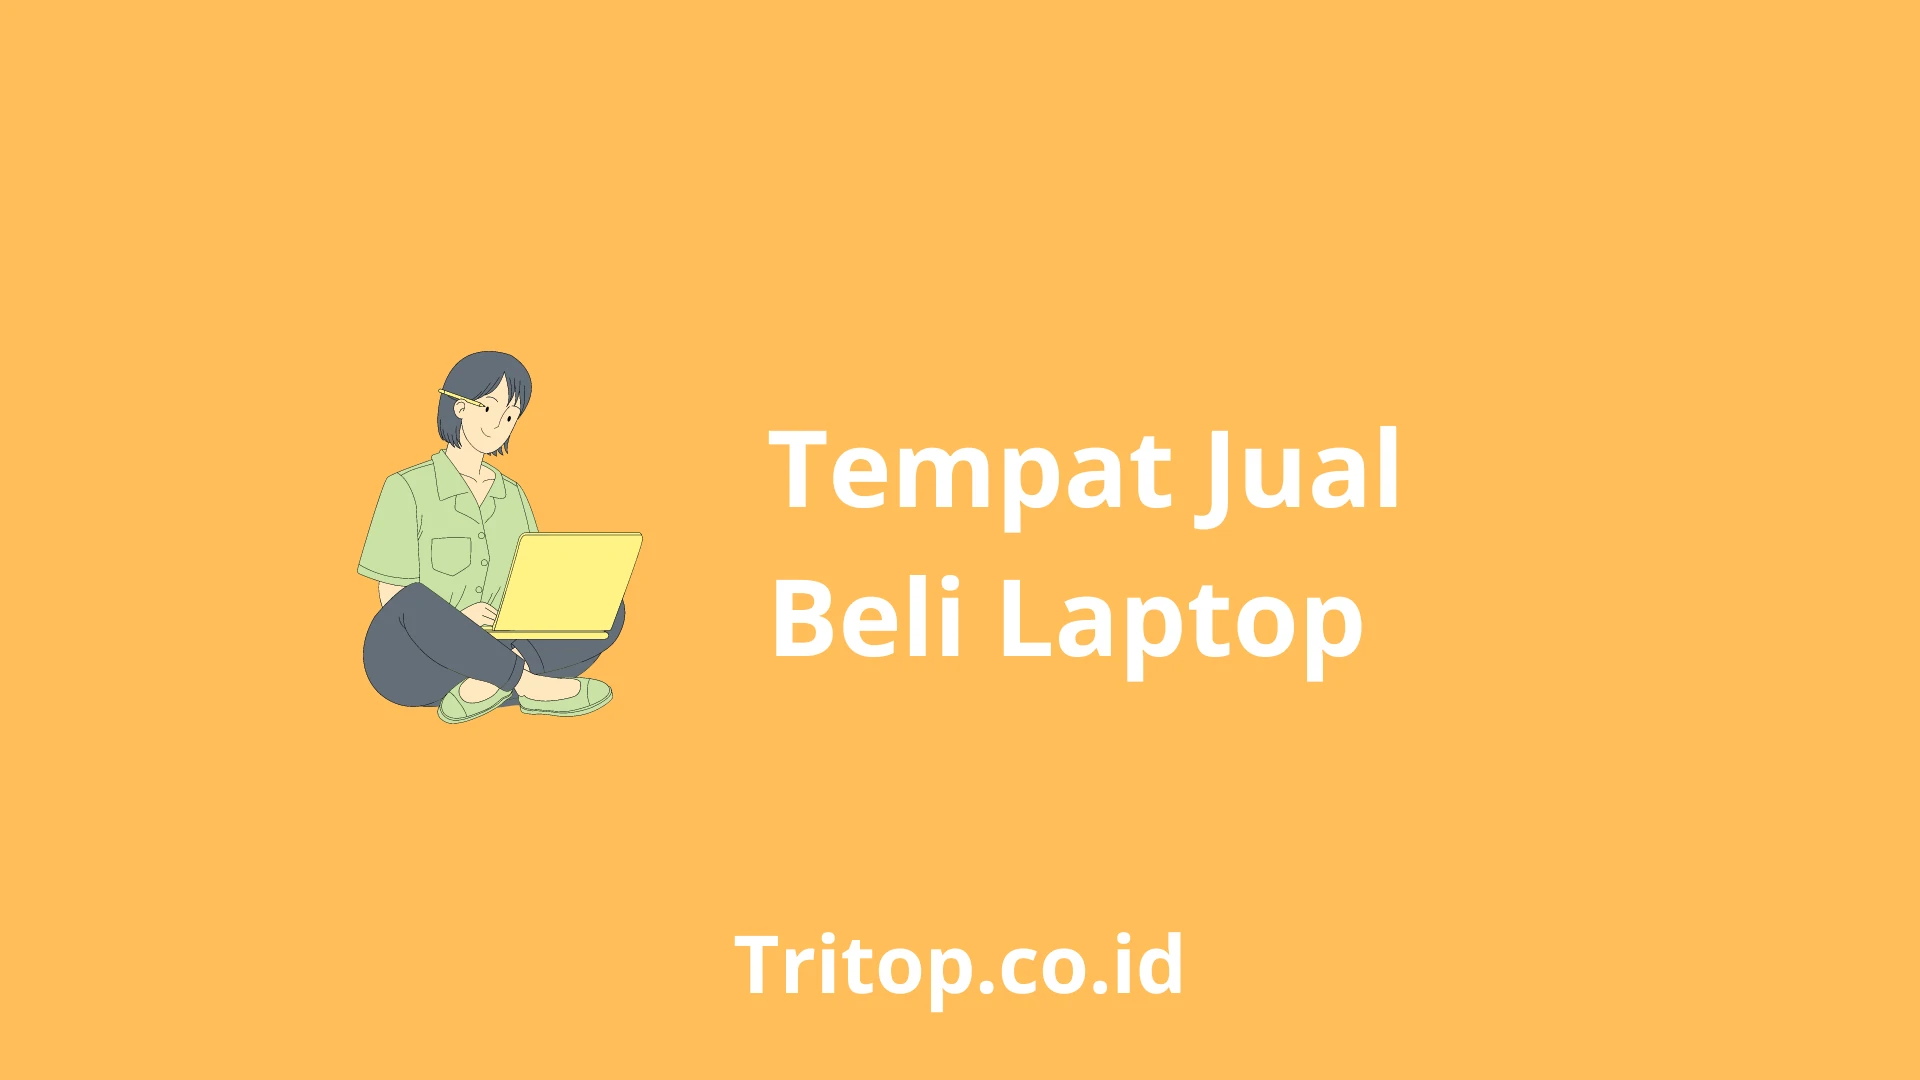 Tempat Jual Beli Laptop tritop.co.id